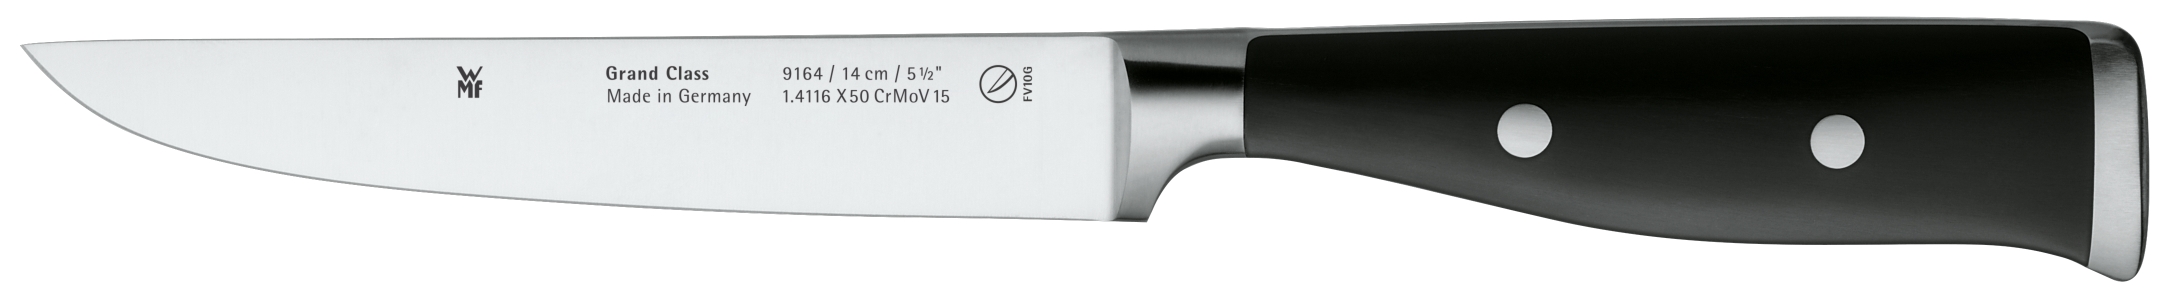 Универсальный нож Grand Class 14 см